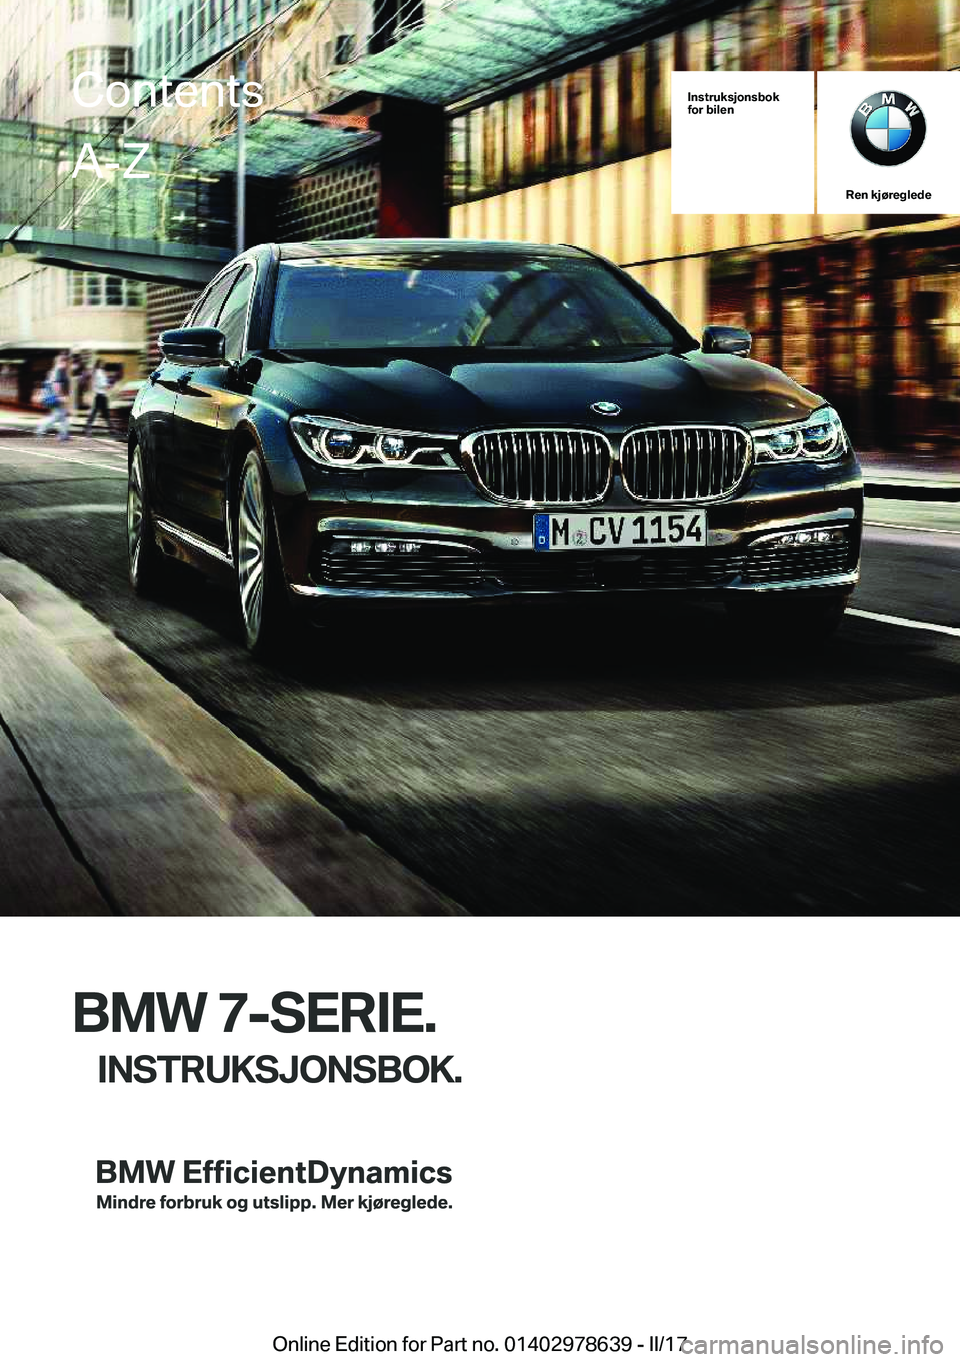 BMW 7 SERIES 2018  InstruksjonsbØker (in Norwegian) �I�n�s�t�r�u�k�s�j�o�n�s�b�o�k
�f�o�r��b�i�l�e�n
�R�e�n��k�j�